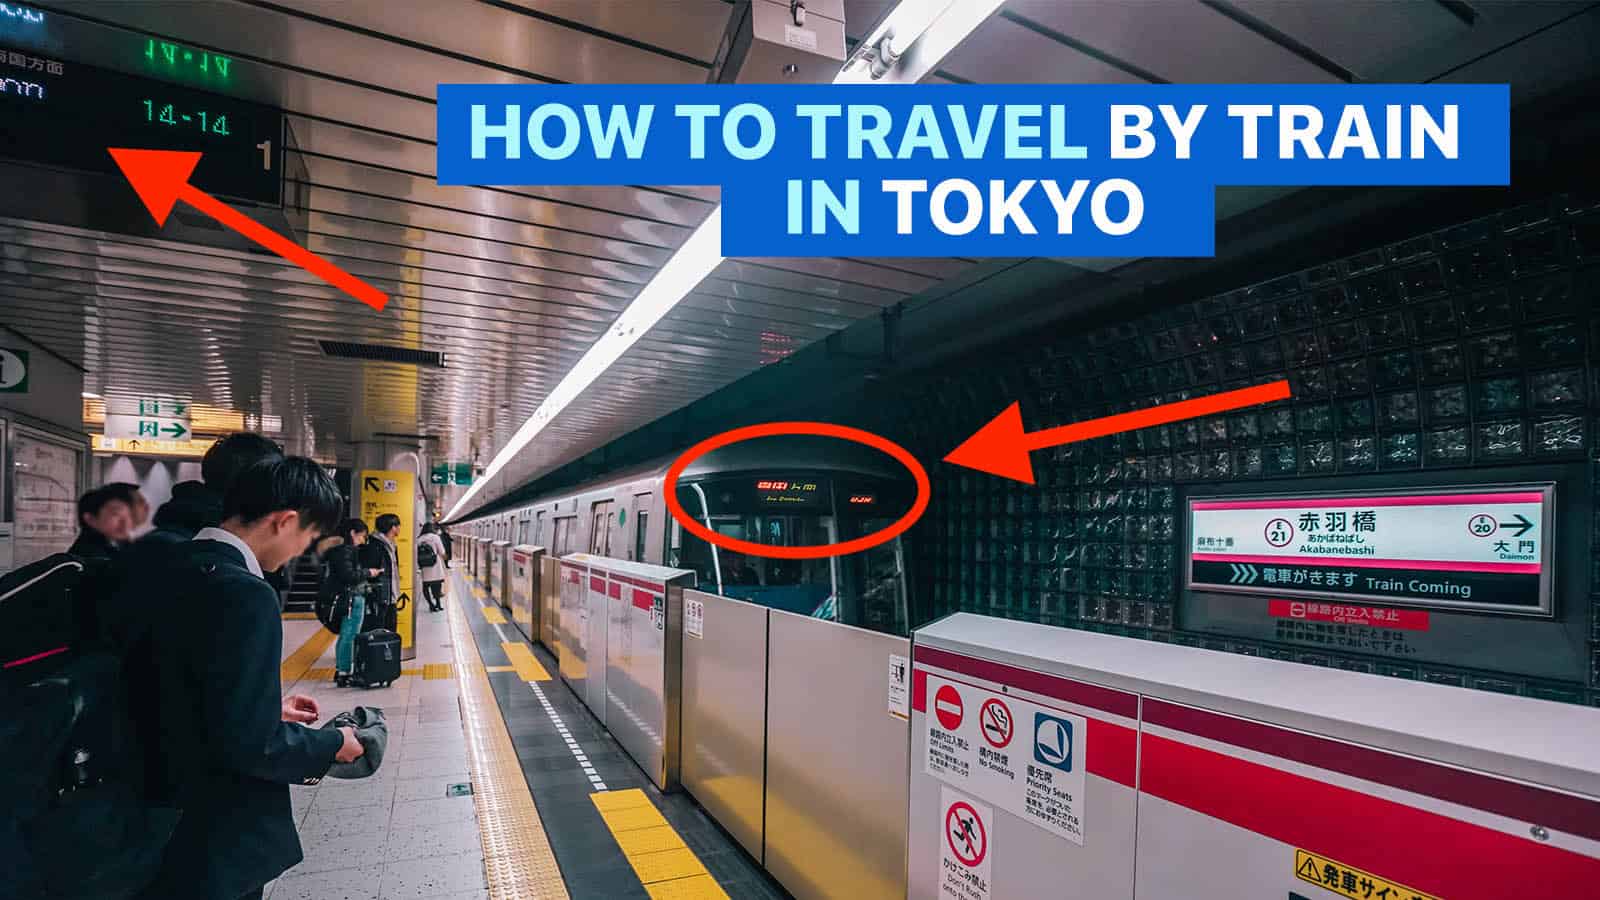 如何乘坐火车游览东京:第一次旅行指南